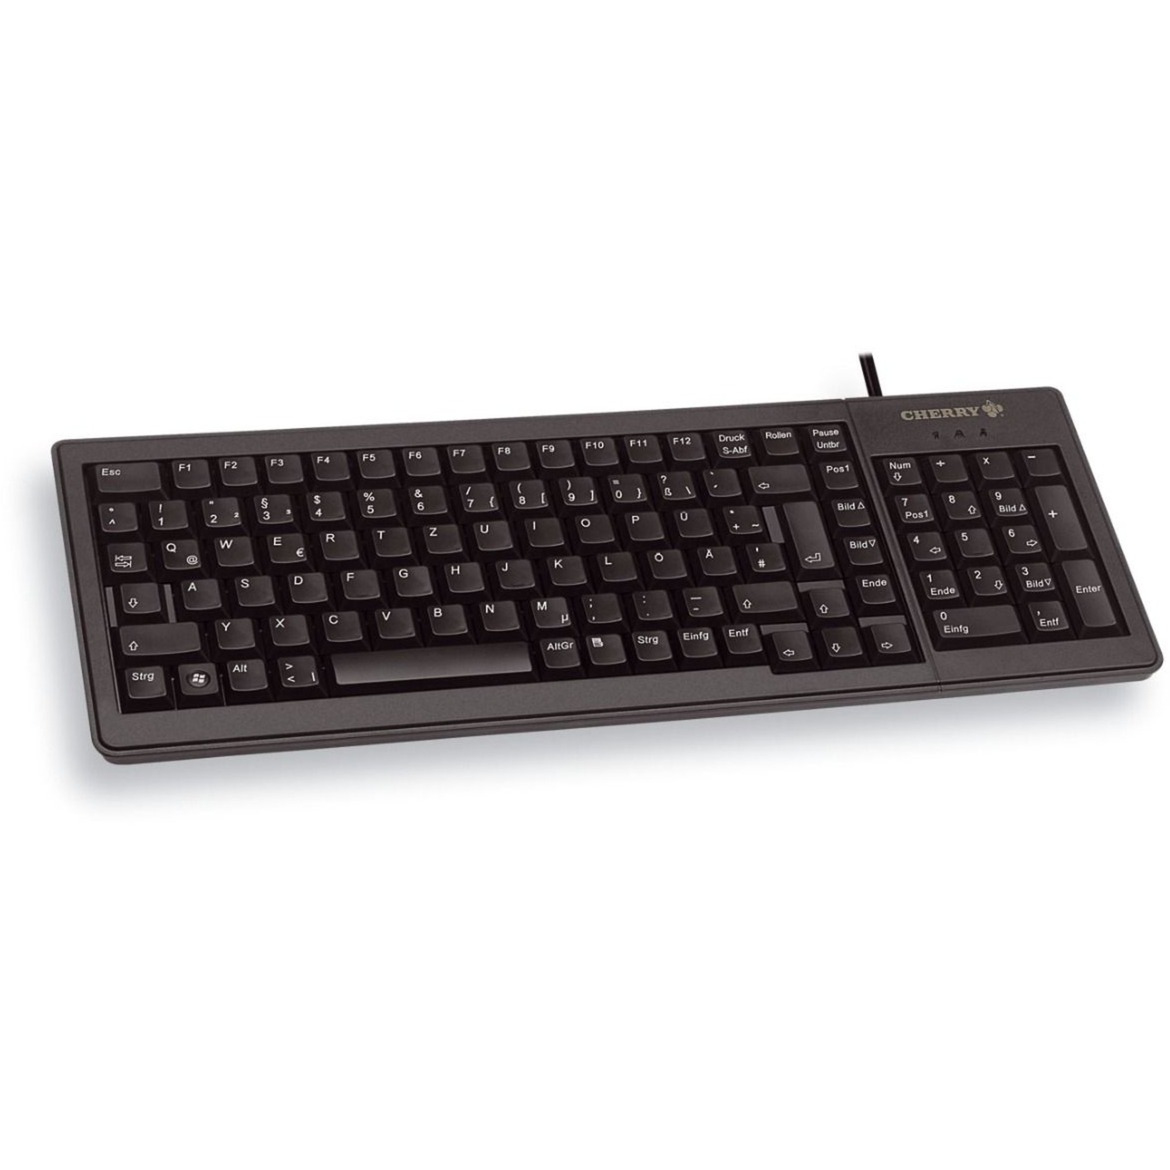 Image of Alternate - XS Complete Keyboard G84-5200, Tastatur online einkaufen bei Alternate